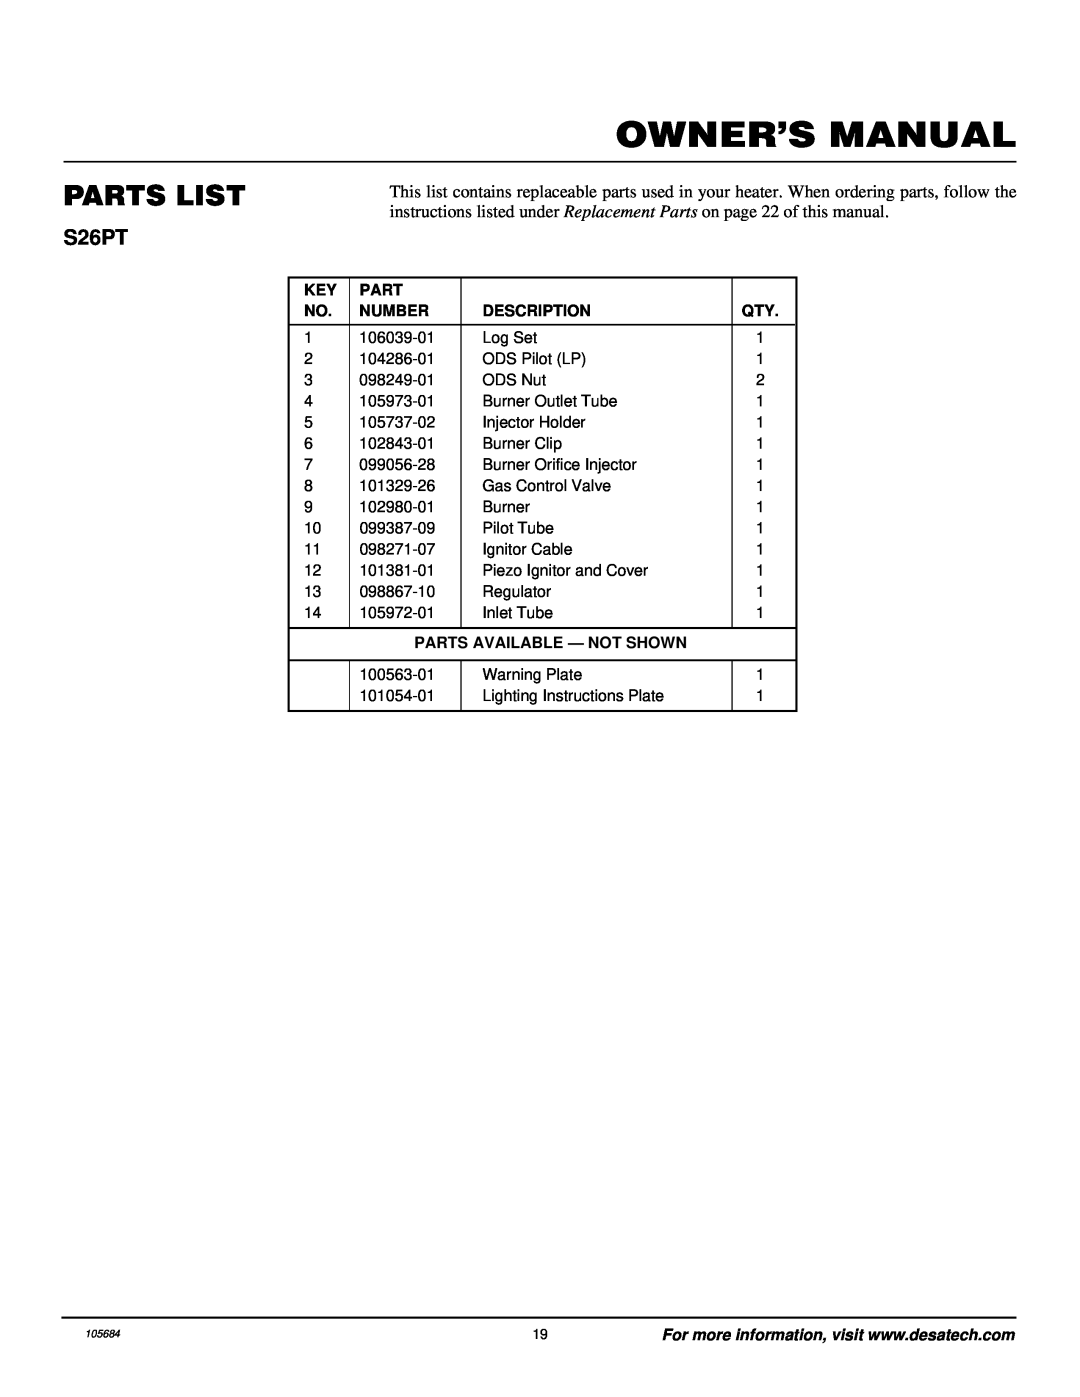 Desa Tech S26PT installation manual Parts List, Number, Description, Parts Available - Not Shown 